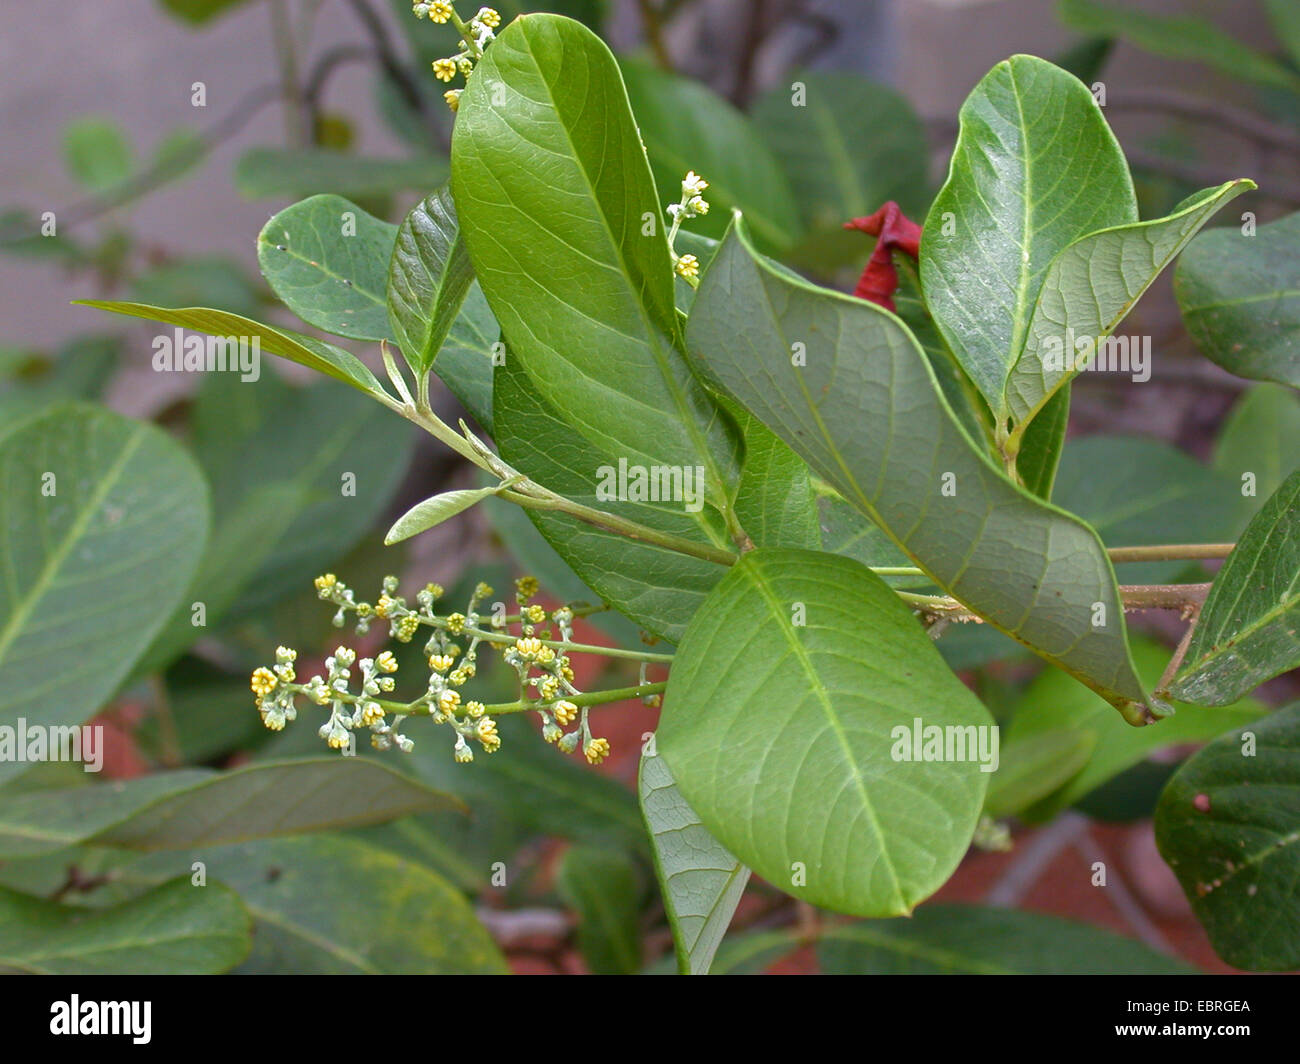 Alectryon subcinereus, Cupania subcineria, Nephelium leiocarpum (Nephelium leiocarpum), blooming branch Stock Photo